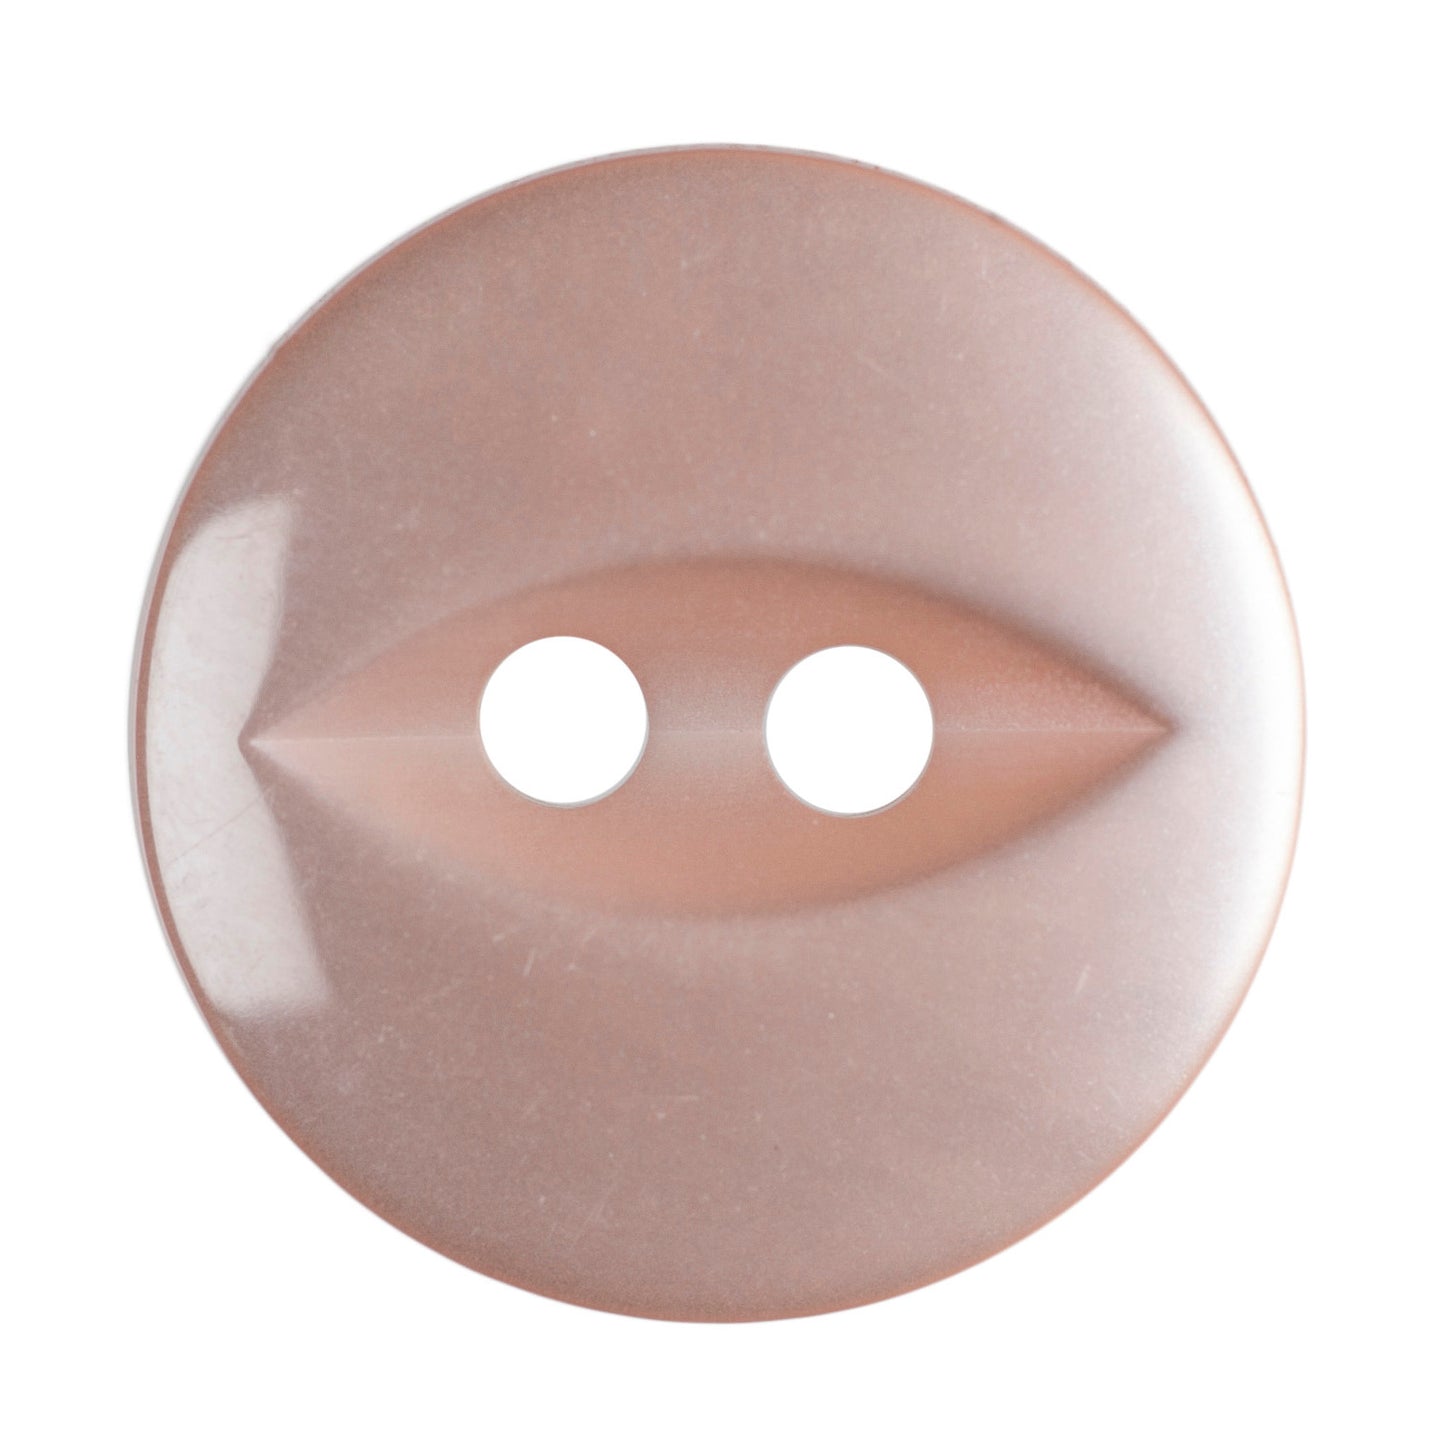 Fisheye Buttons - 14mm